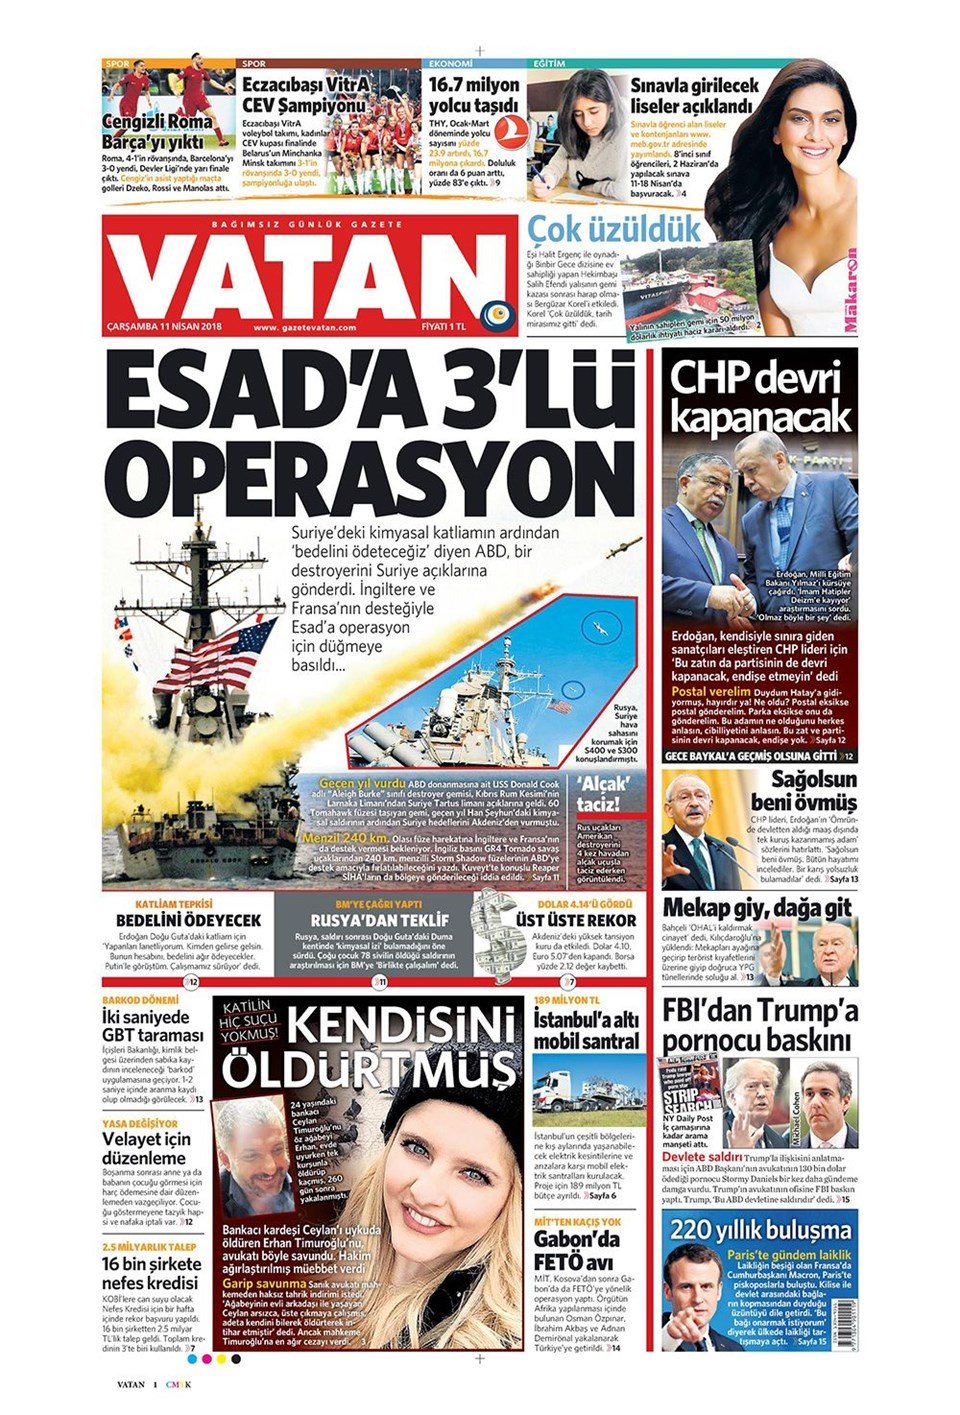 Gazete manşetleri 11 Nisan 2018 Hürriyet - Sözcü - Posta